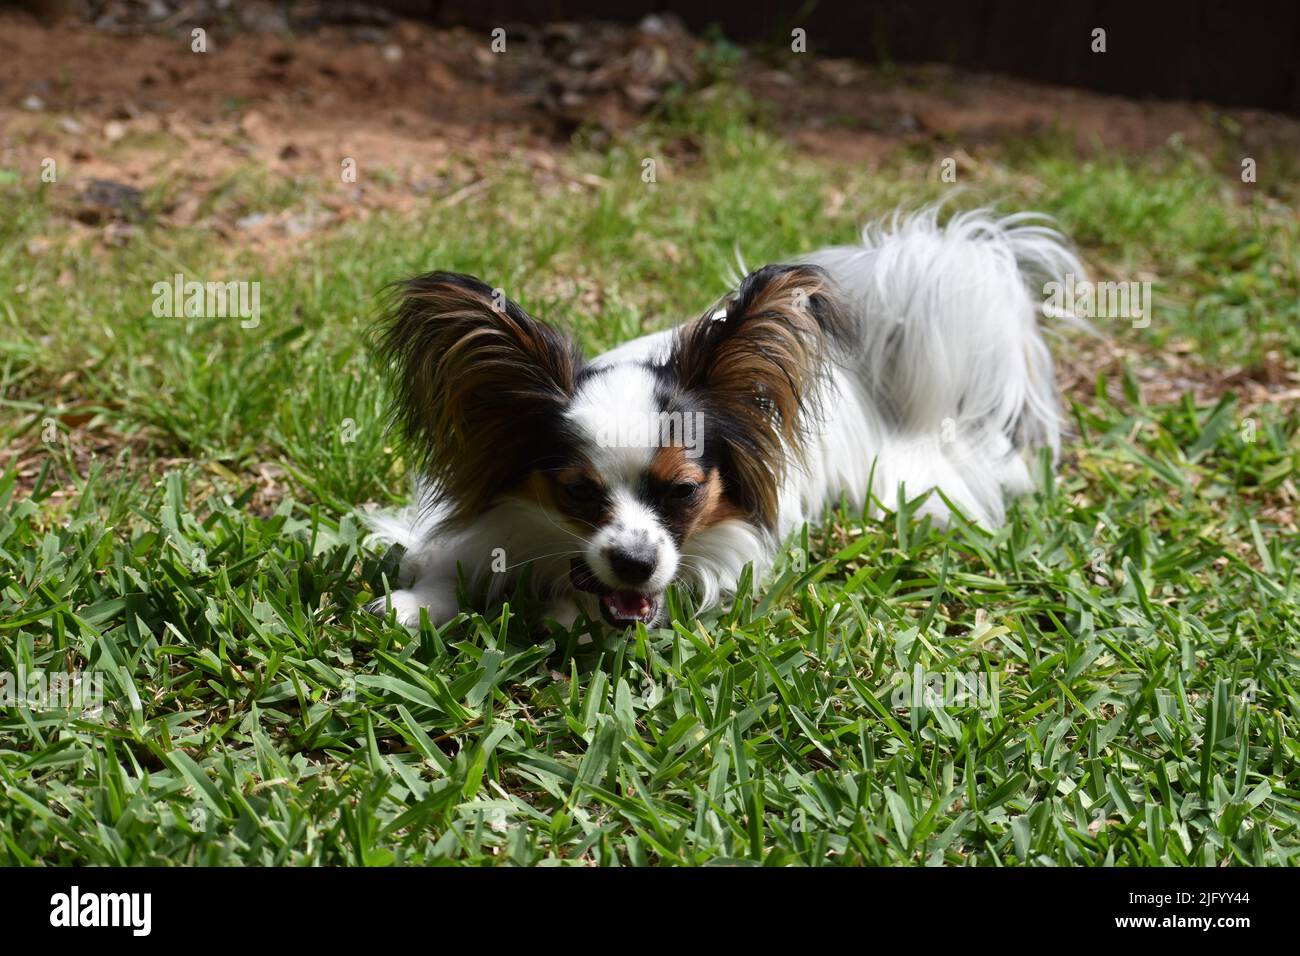 Nahaufnahme eines Papillon-Hundes, der im Freien im grünen Gras im Sonnenlicht liegt Stockfoto